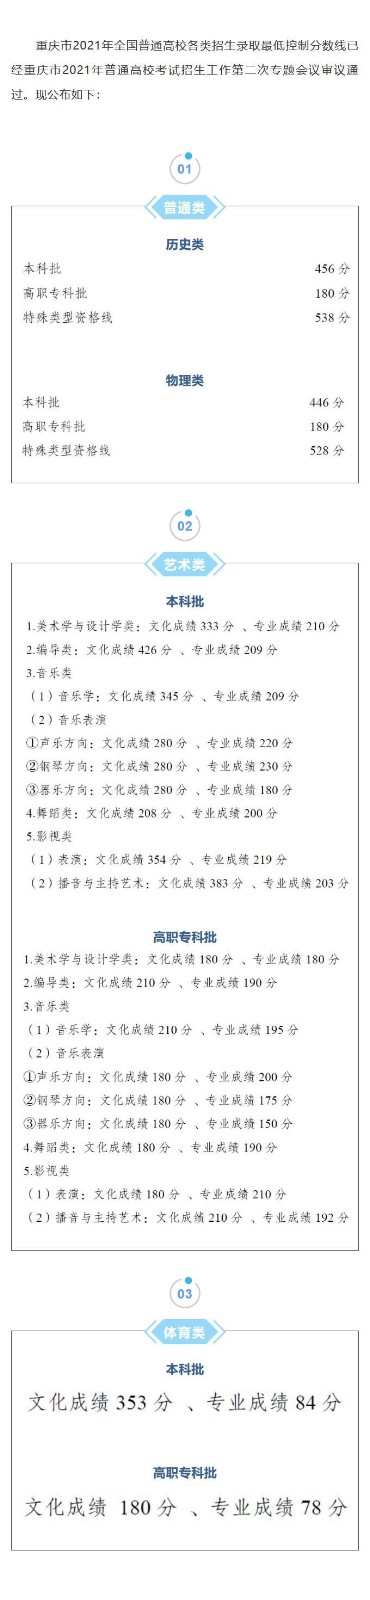 重庆高考录取分数线(含2019-2021分数线)